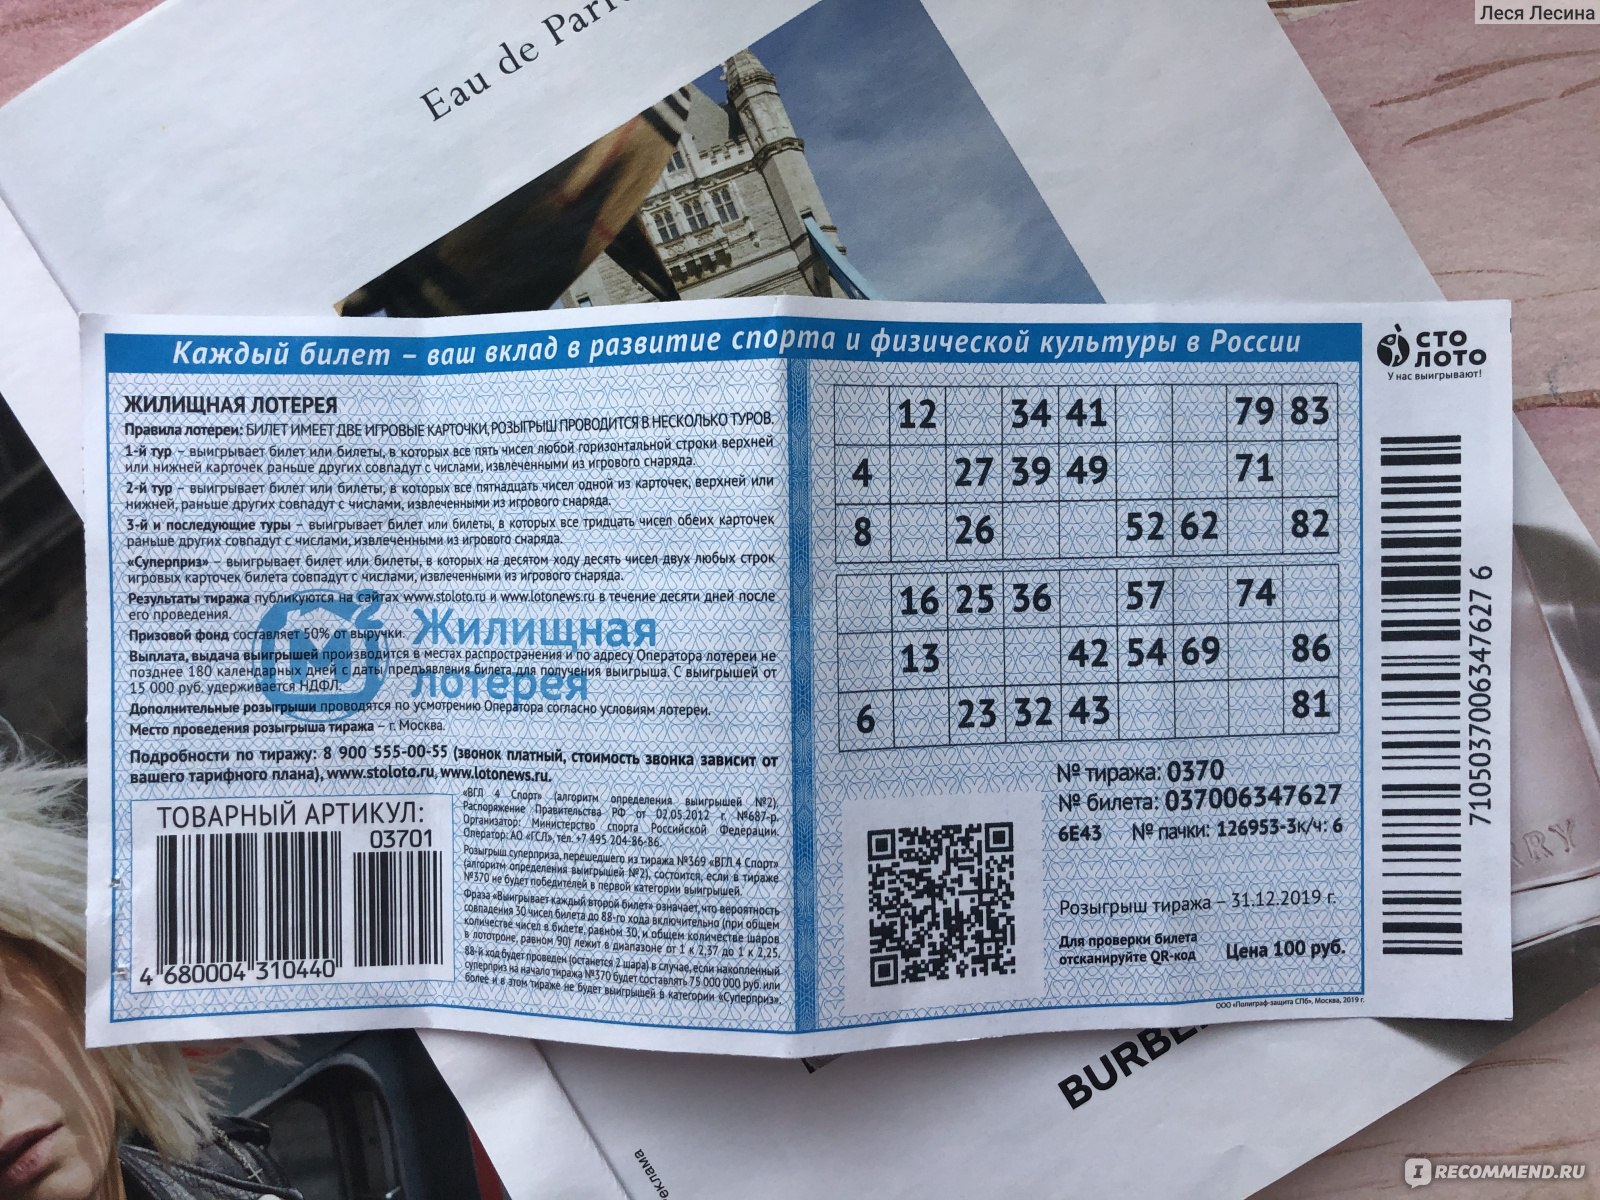 Лотерейный билет мечталион по qr коду. Билет лото жилищная лотерея. Билет жилищной лотереи м2. Как выглядит билет жилищной лотереи. Номер билета жилищной лотереи.